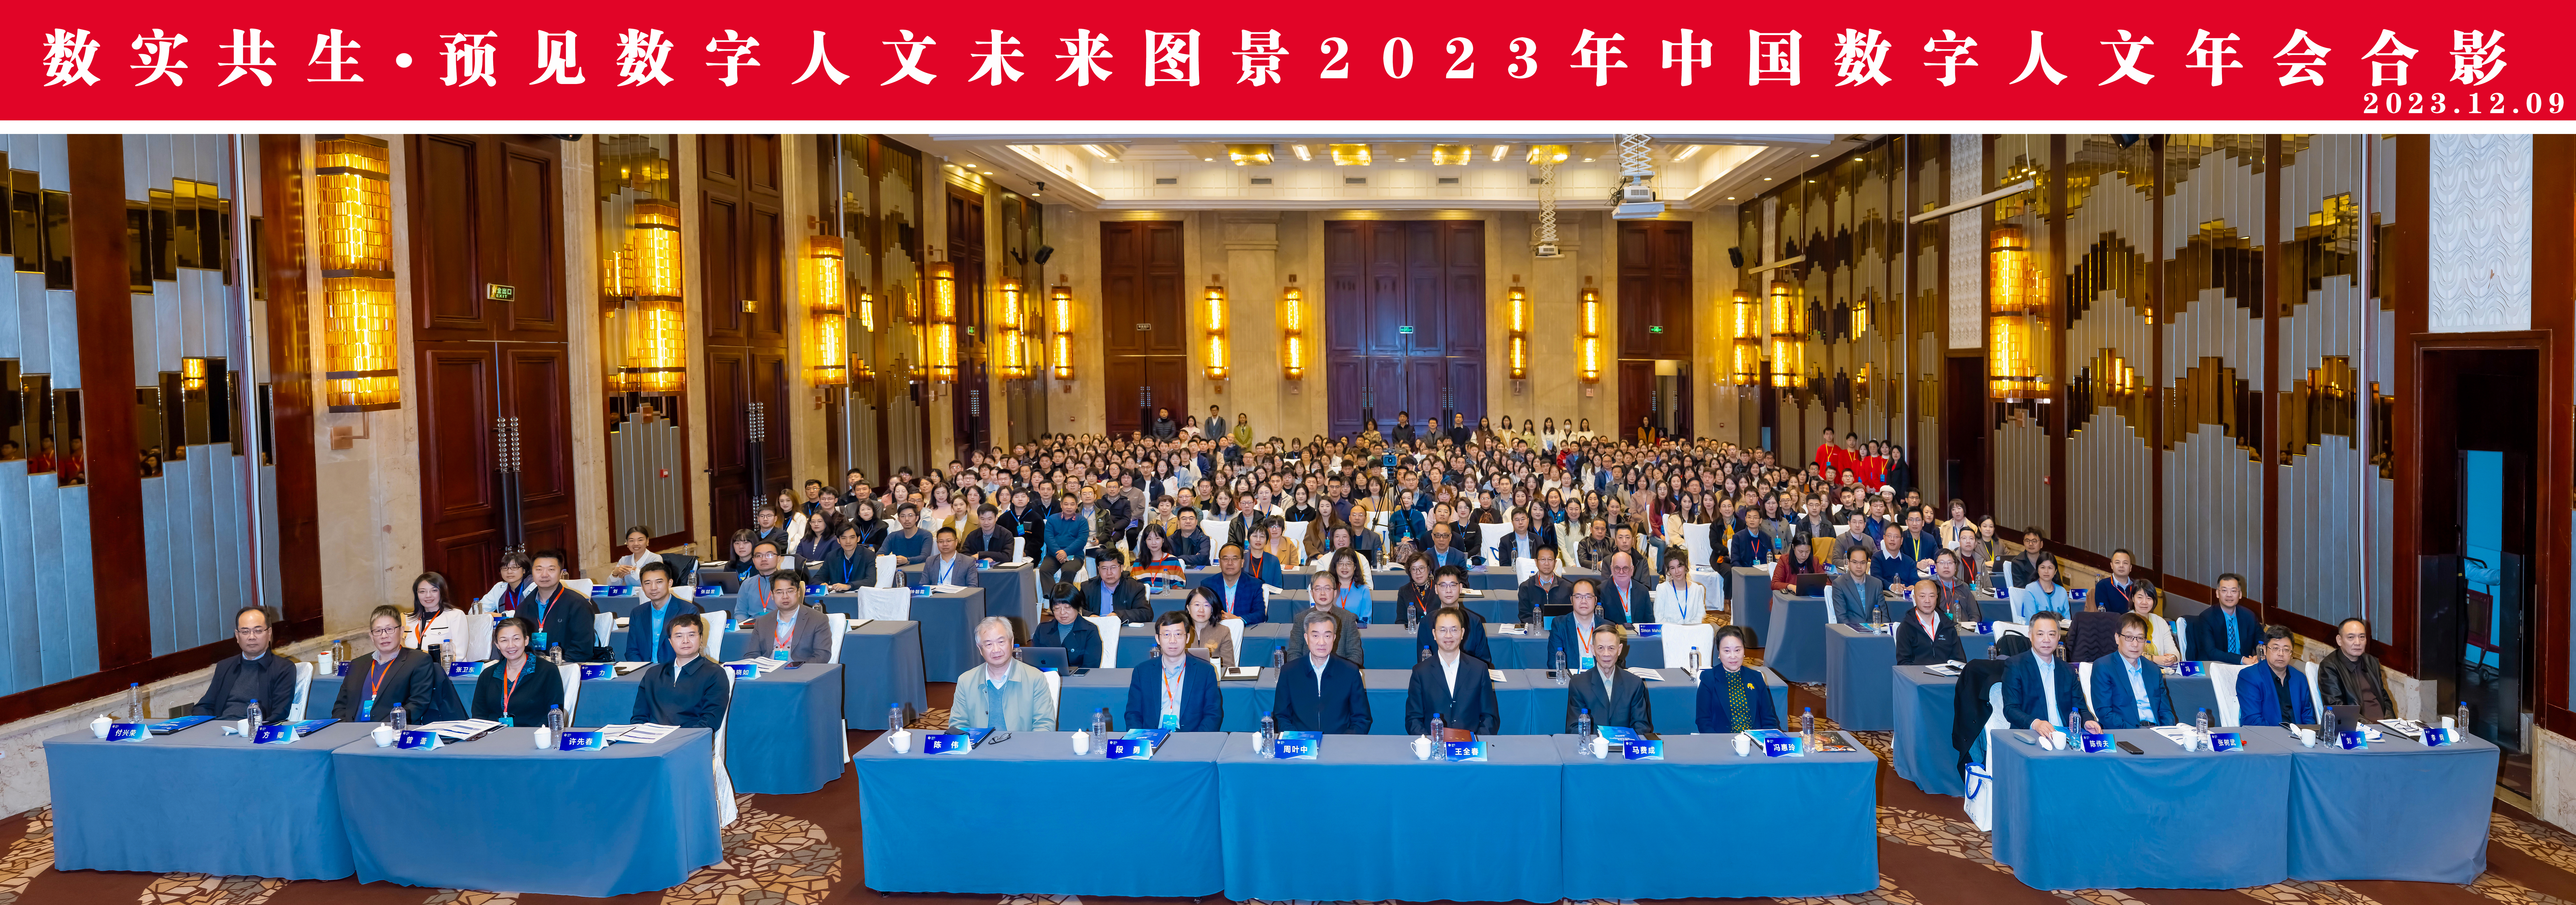 第五届中国数字人文年会在武汉大...